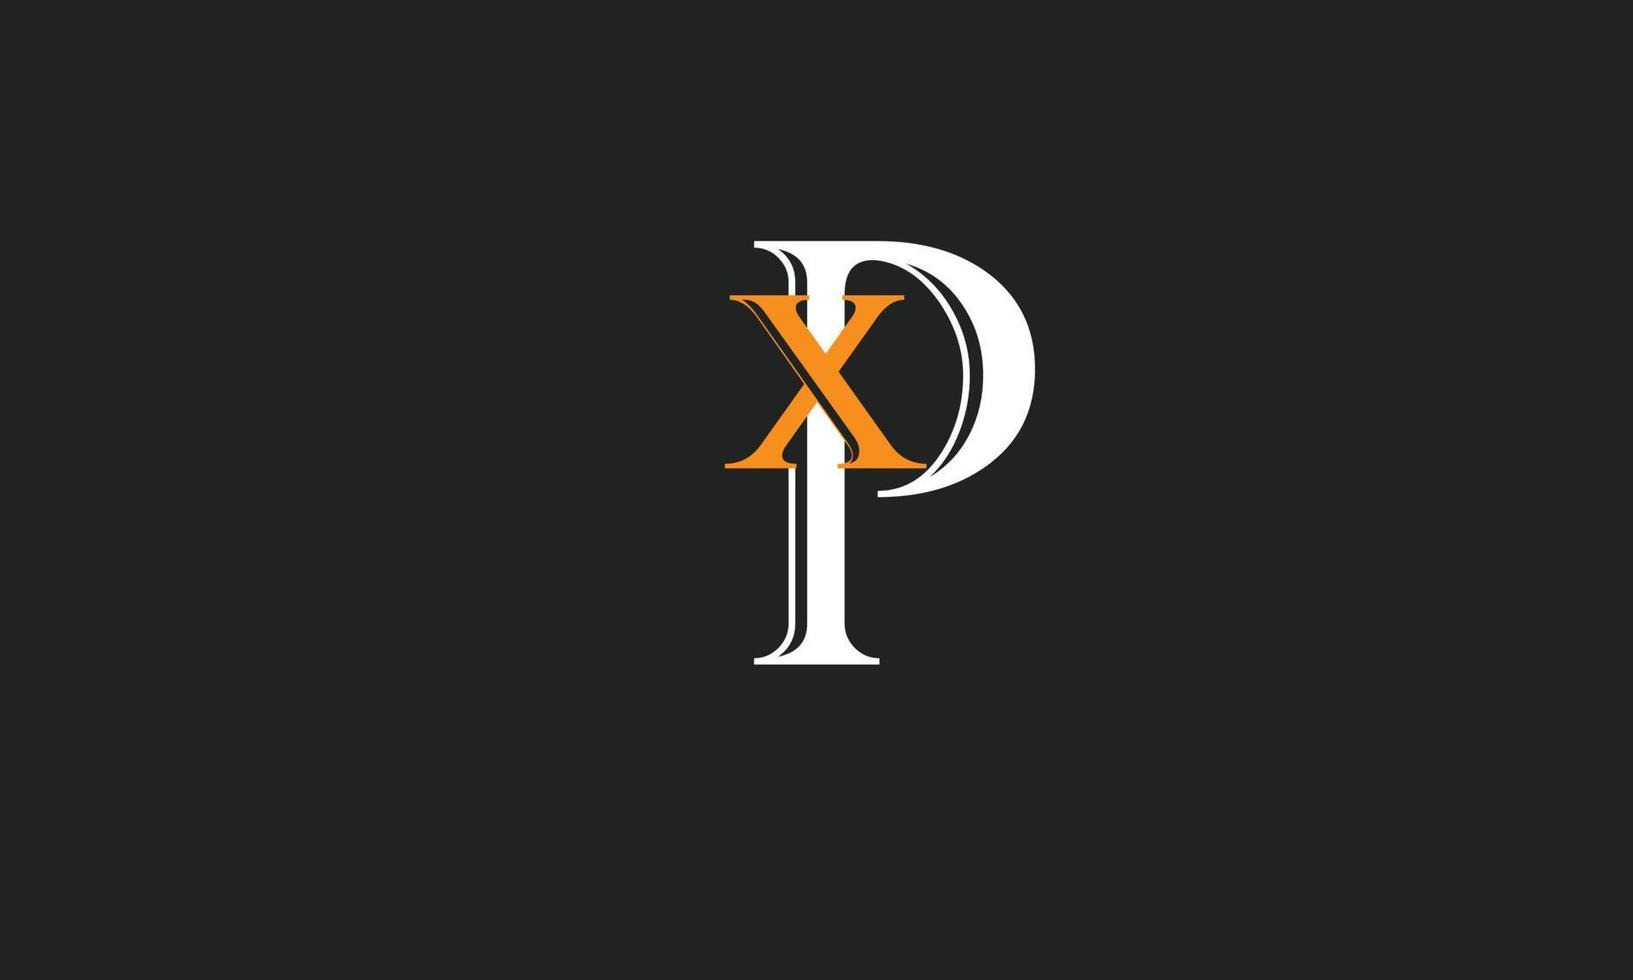 letras del alfabeto iniciales monograma logo xp, px, x y p vector